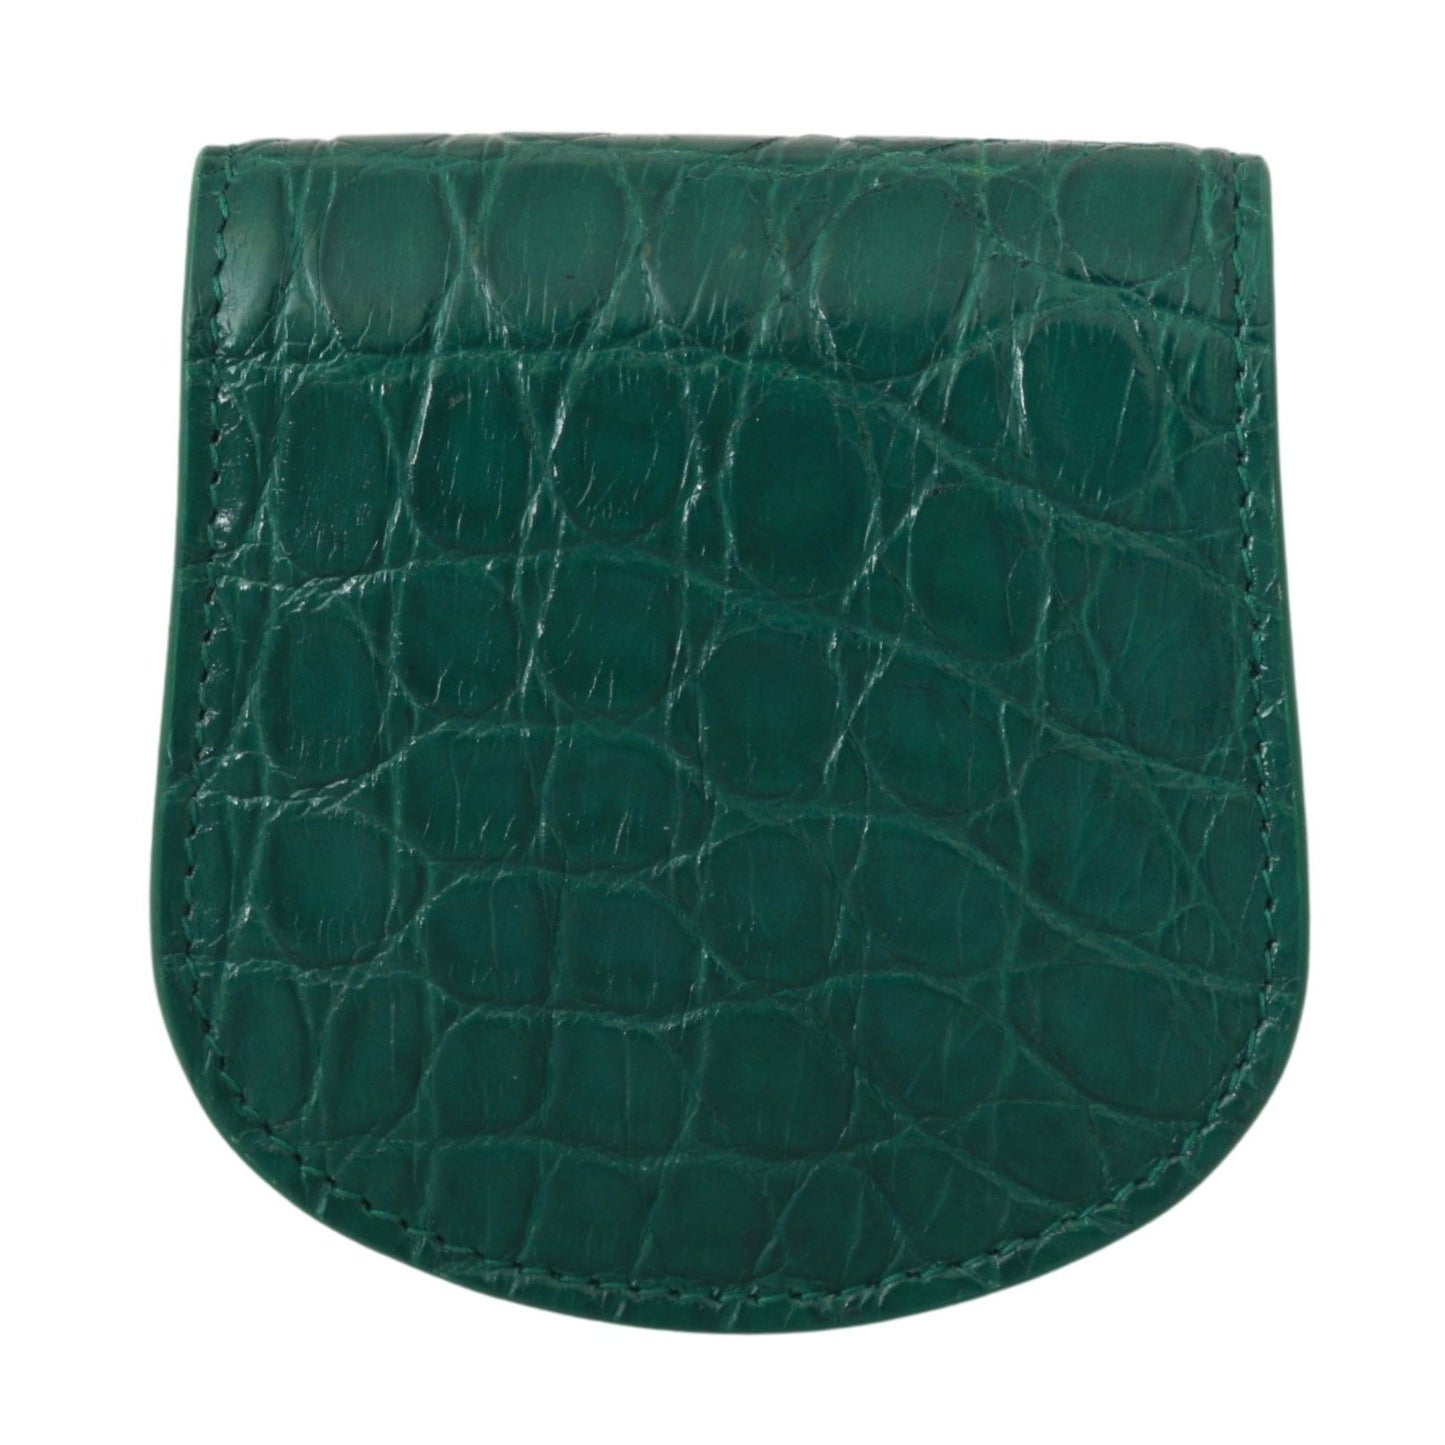 Dolce & Gabbana Green Exotic Skins Condom Case Halter Brieftasche